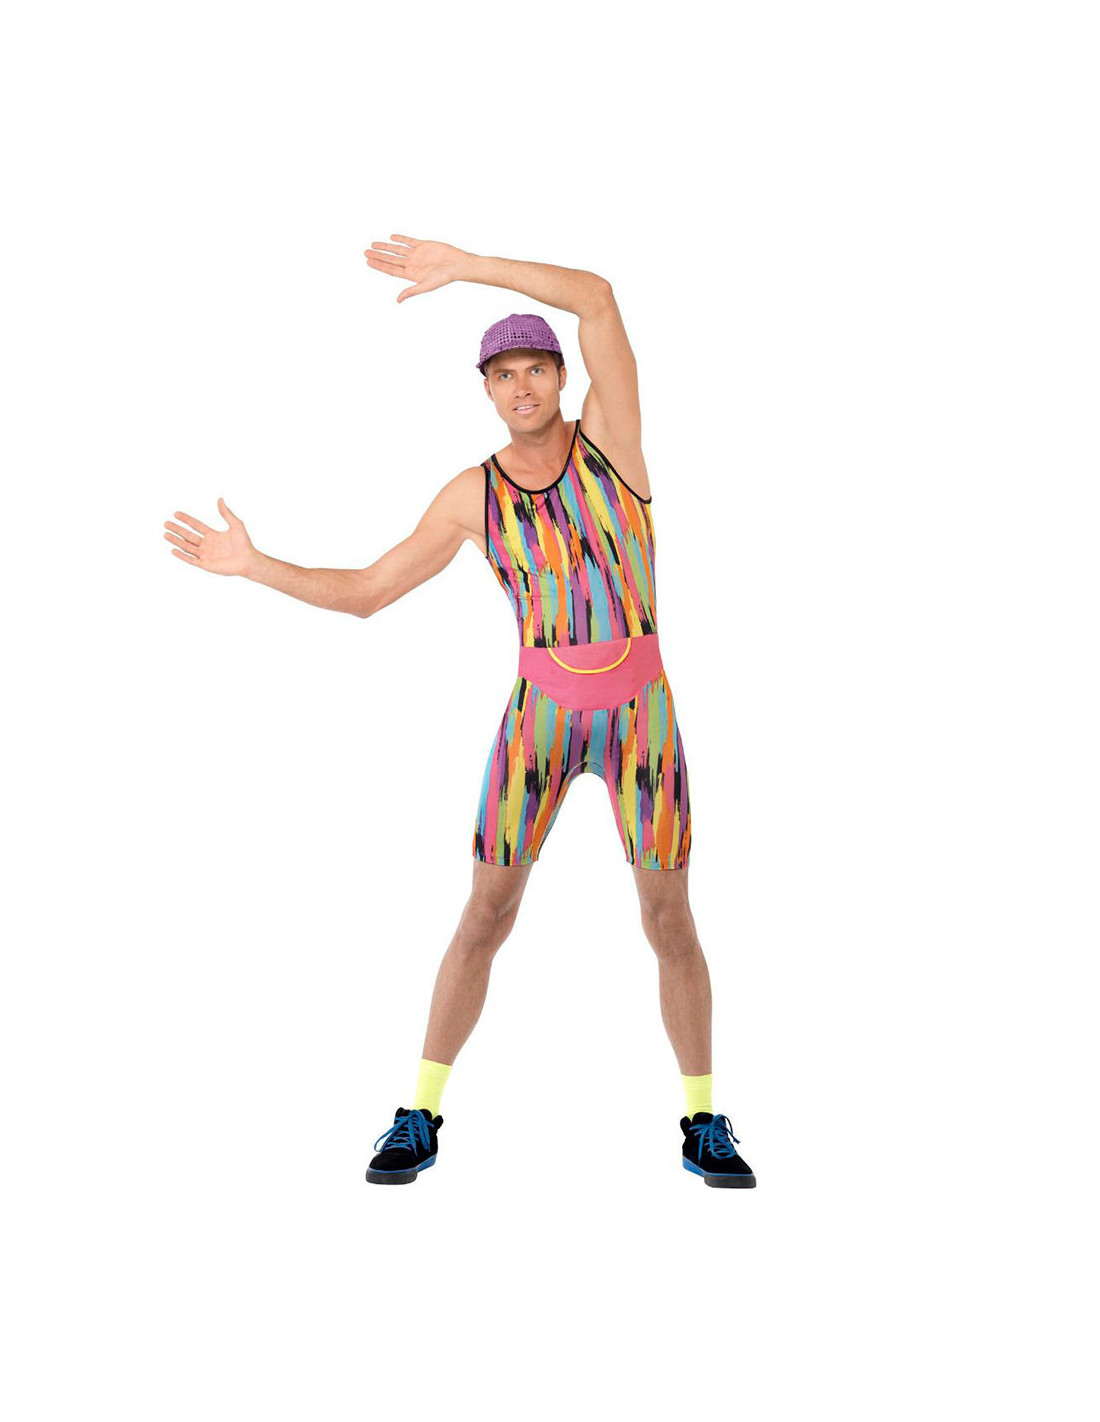 Giro de vuelta Mentalidad oportunidad Disfraz instructor de aerobic 80s - Envío 24h|Disfraces Bacanal